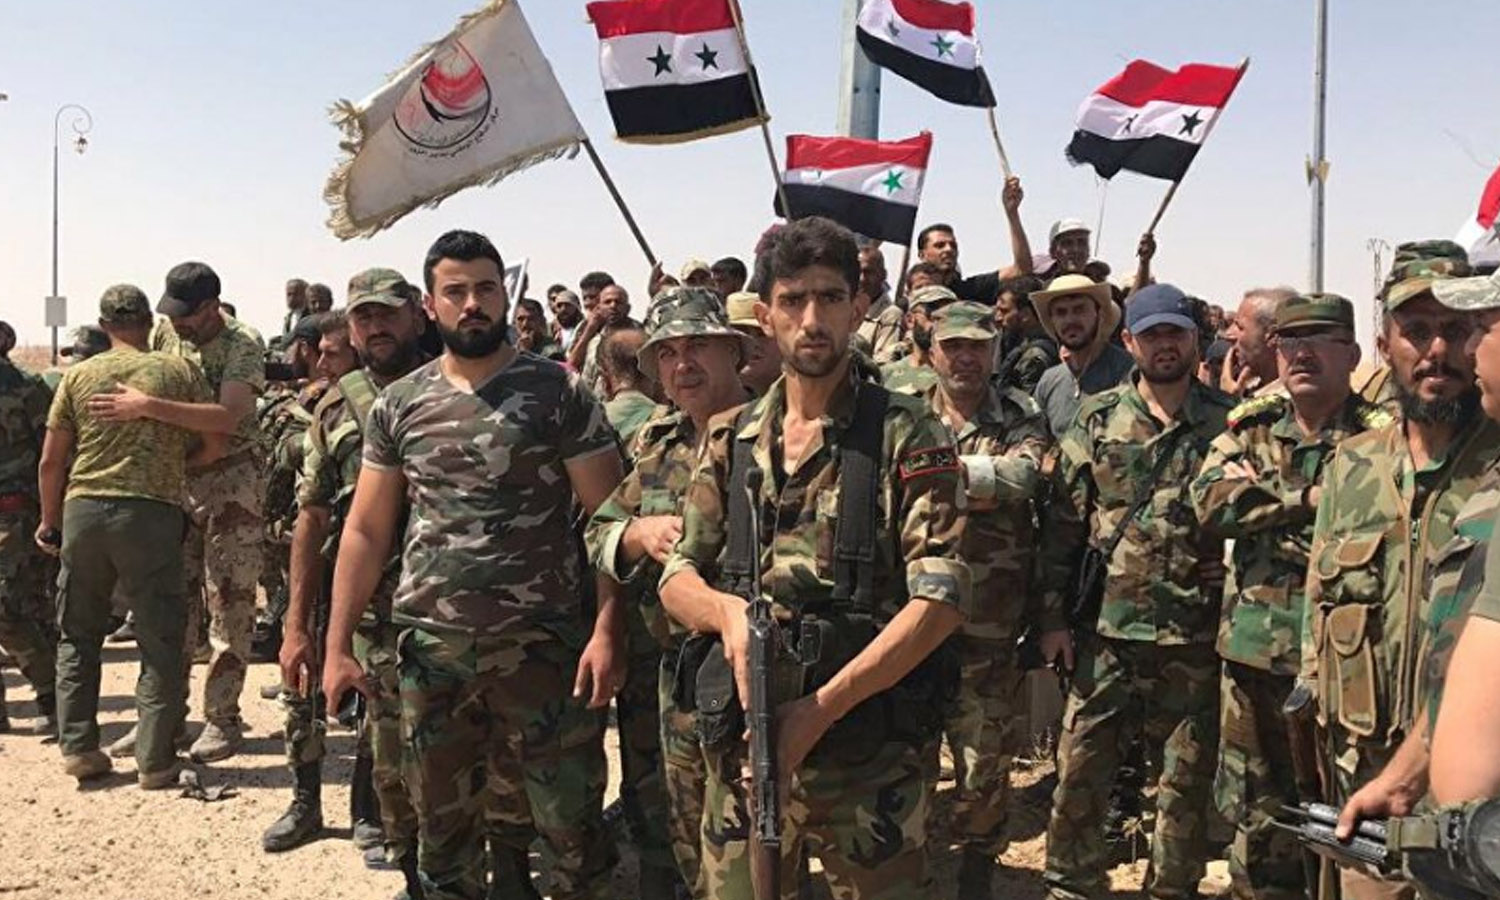 مقاتلون من ميليشيا الدفاع الوطني الرديفة بقوات النظام السوري في محافظة درعا جنوبي سوريا (سبوتنيك)